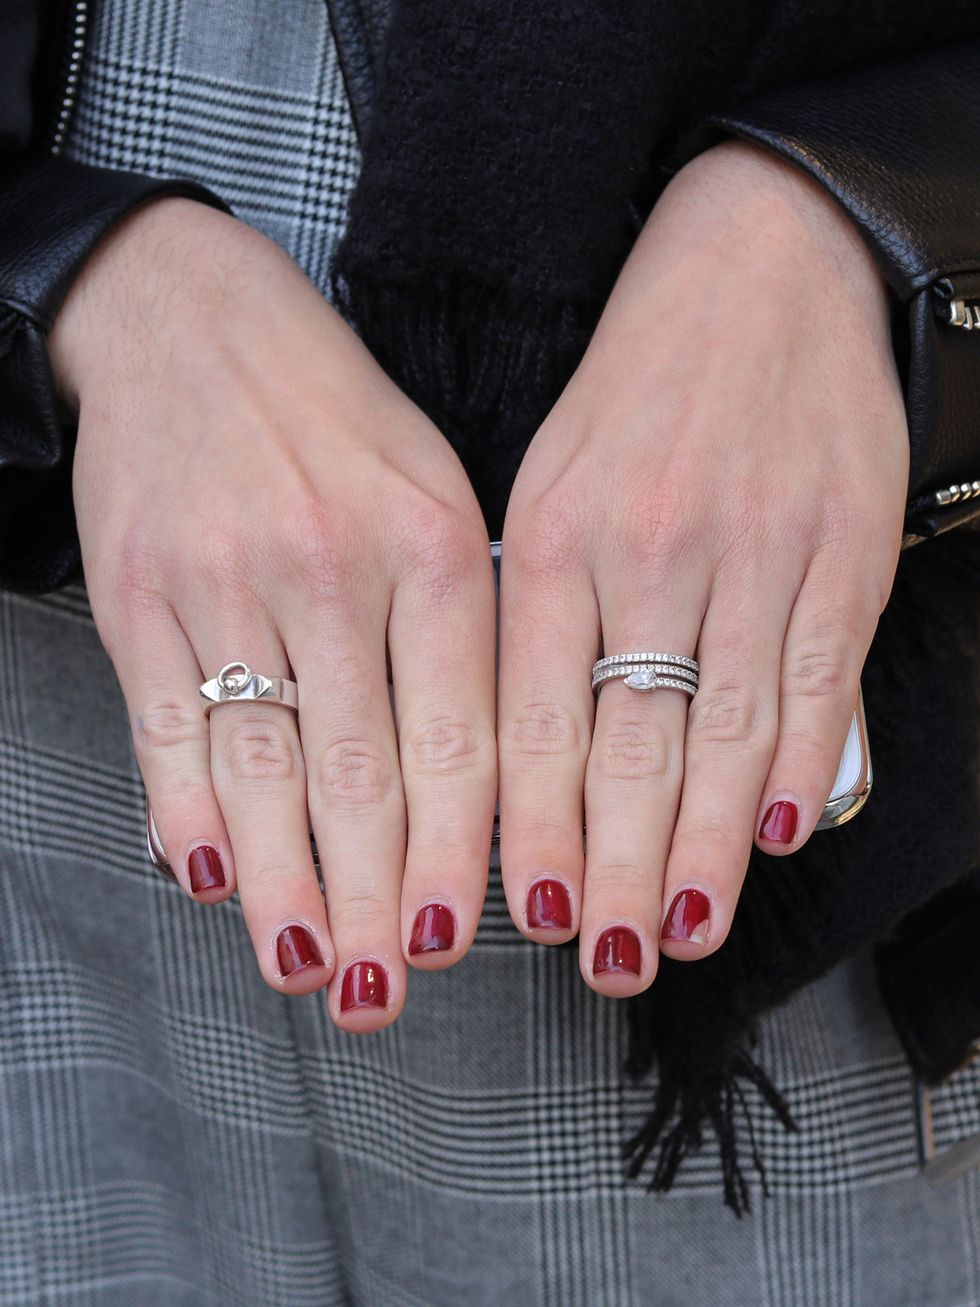 Nail, Finger, Manicure, Nail care, Ring, Hand, Nail polish, Cosmetics, Pink, Engagement ring, 